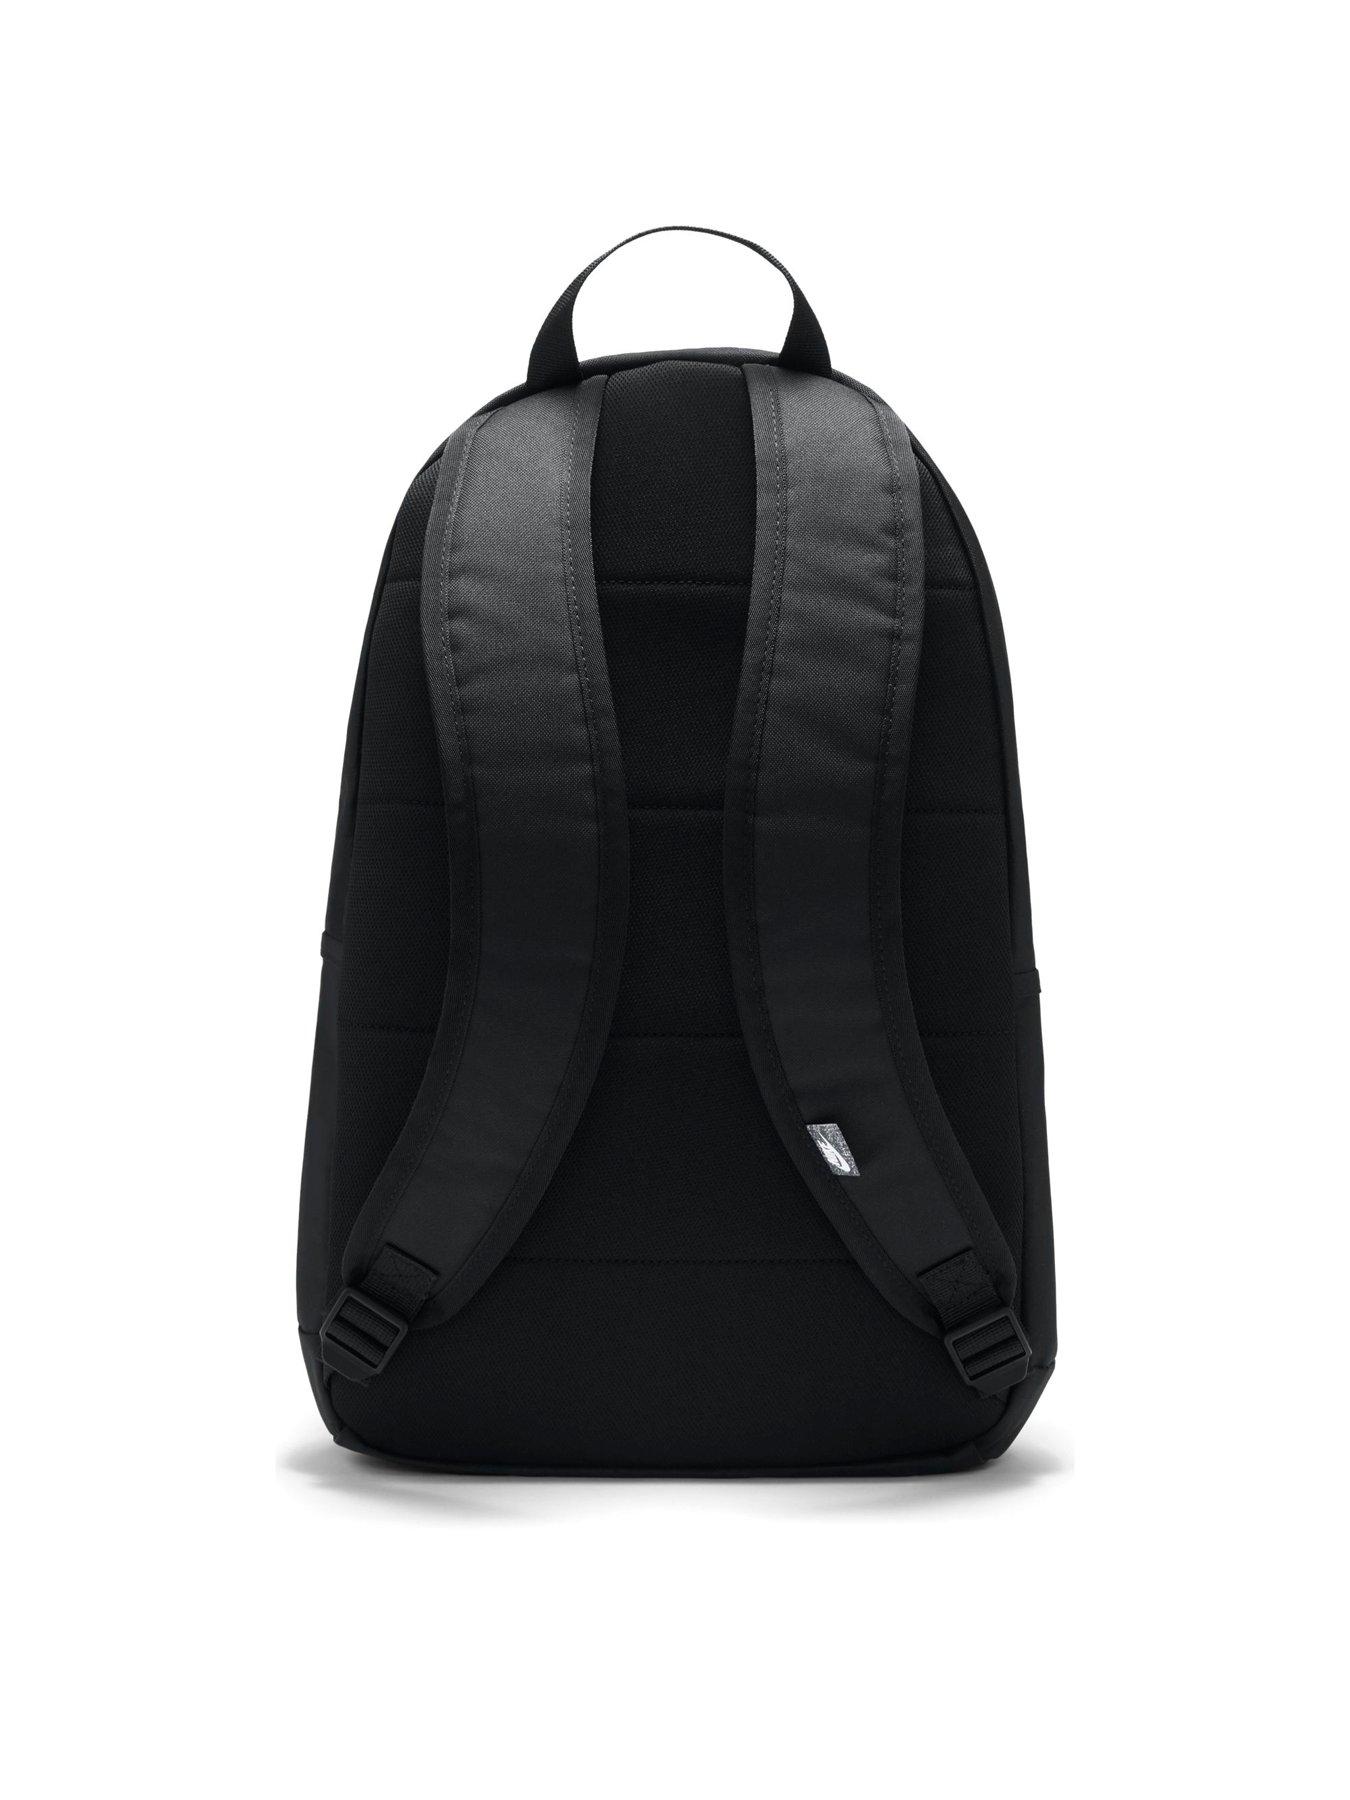 Accessories Elemental Backpack - Black